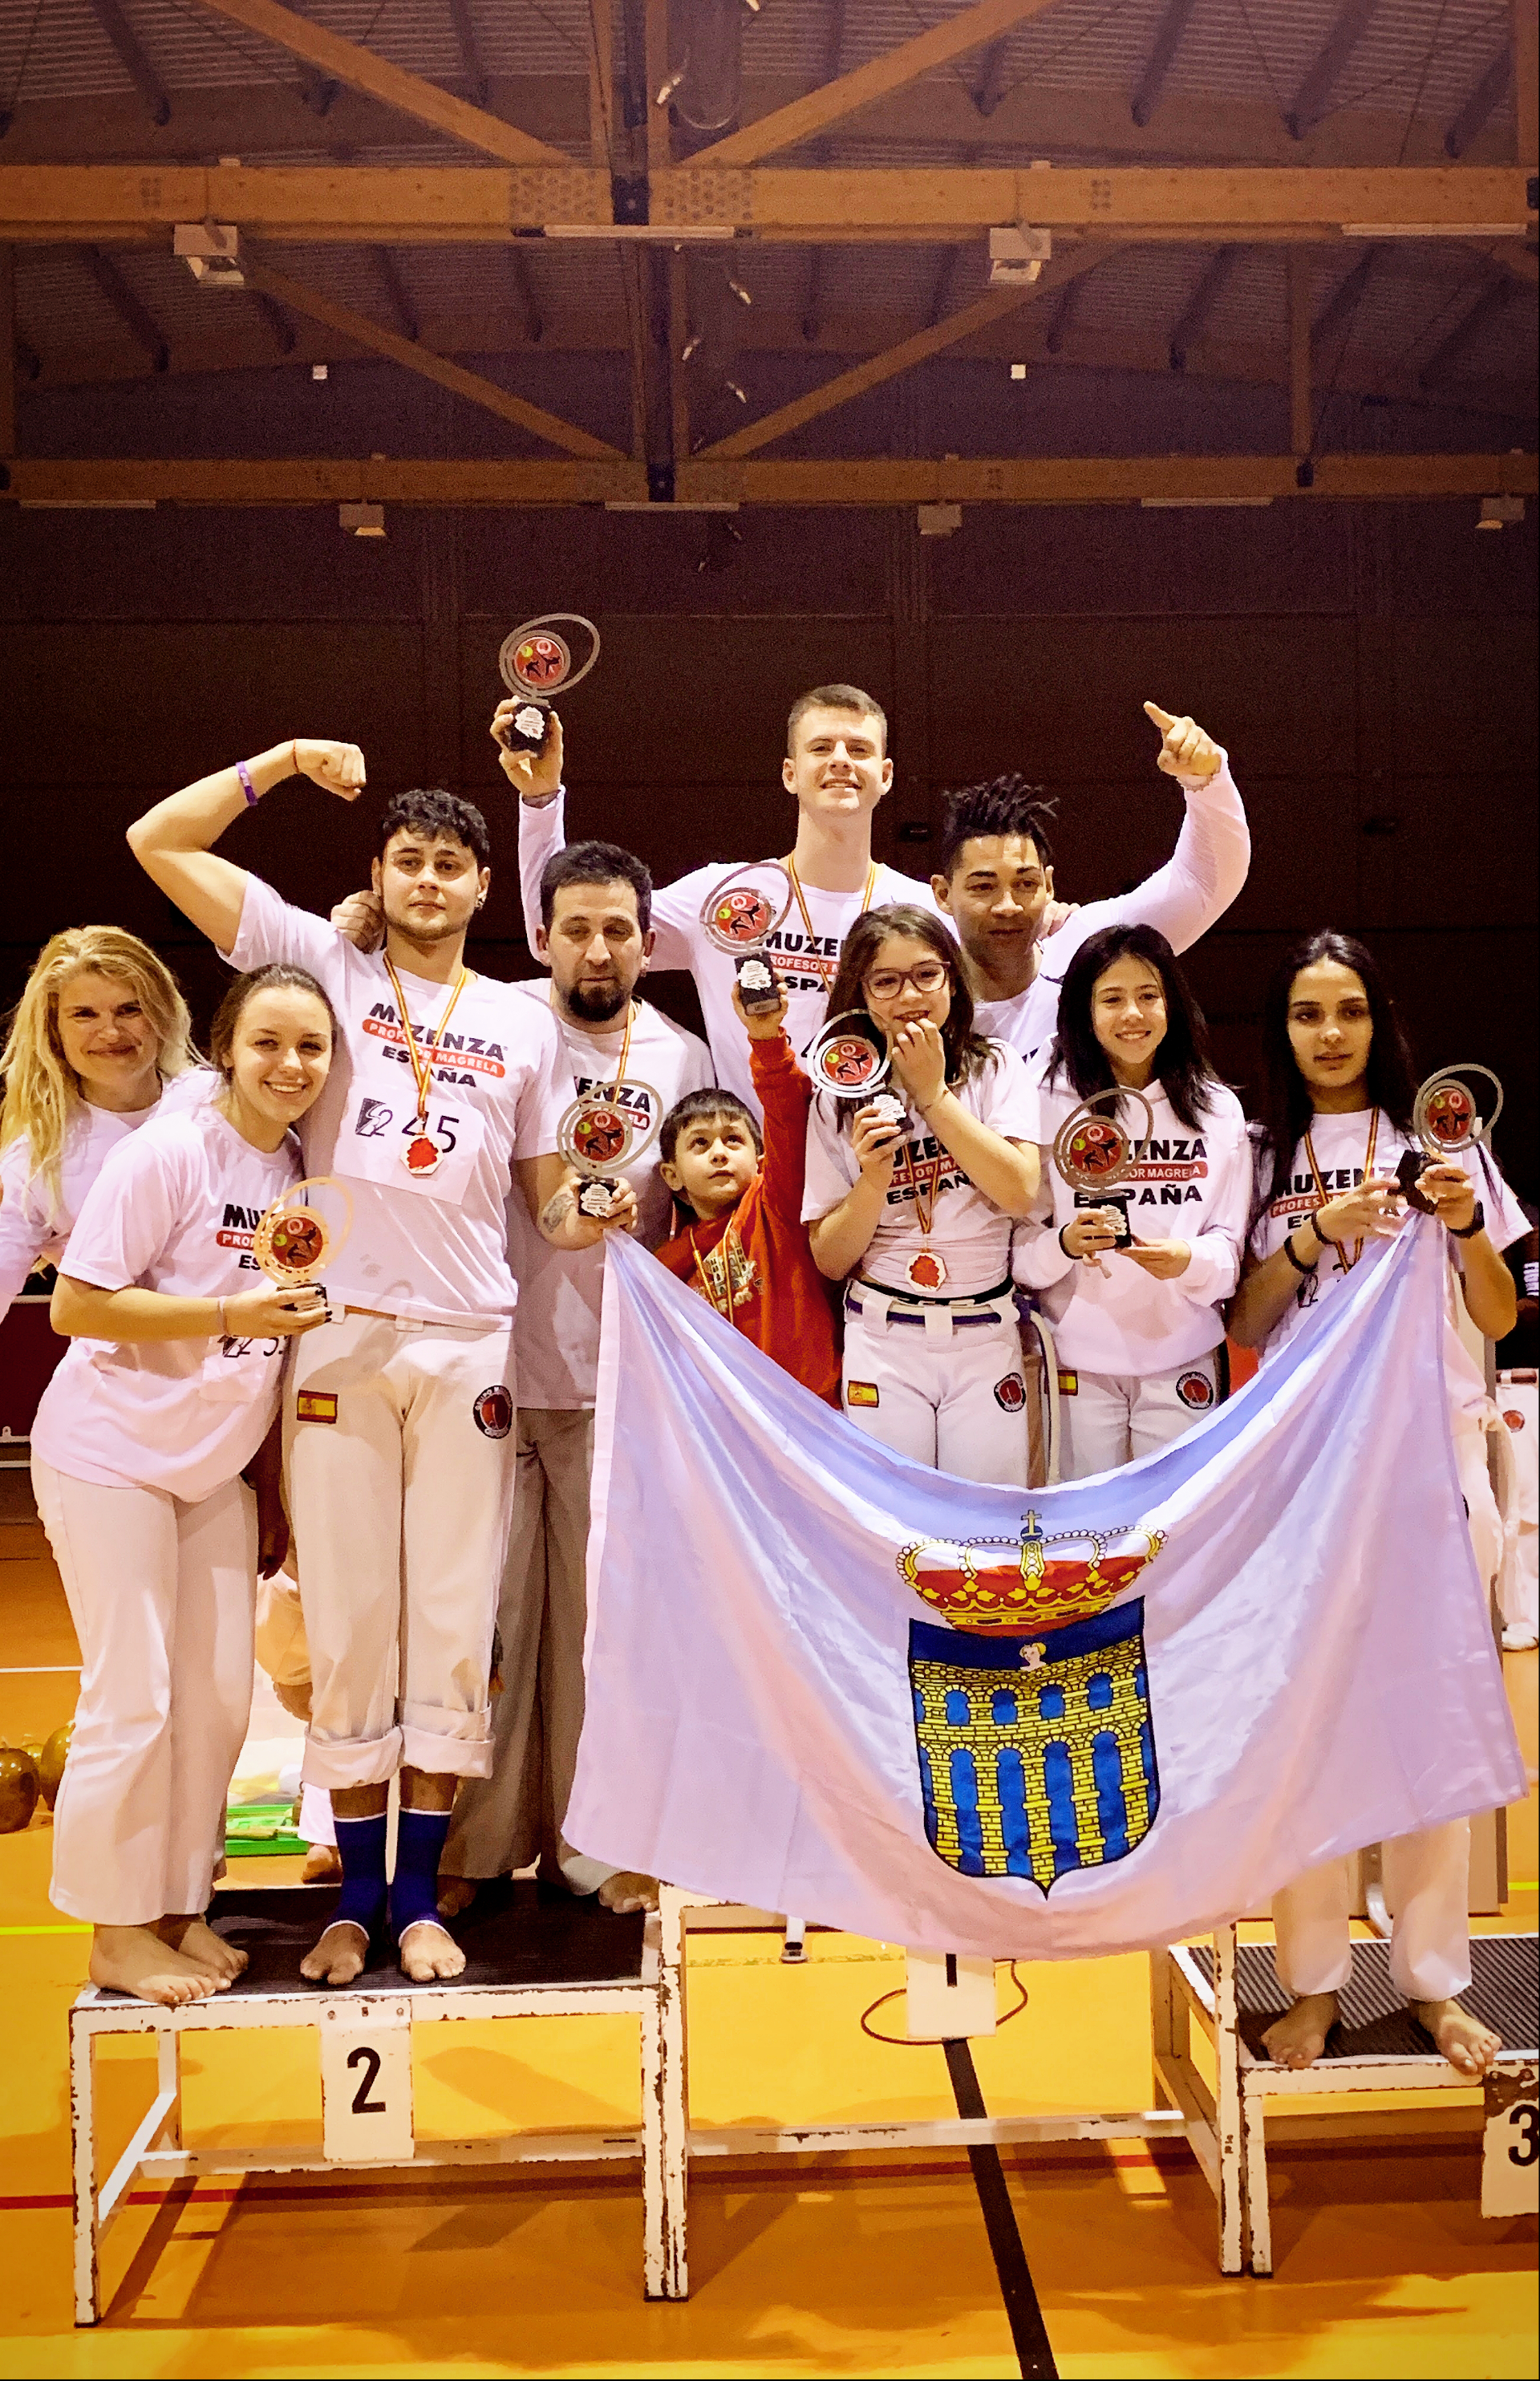 Capoeristas segovianos conquistan el Campeonato Interprovincial de Capoeira 2019